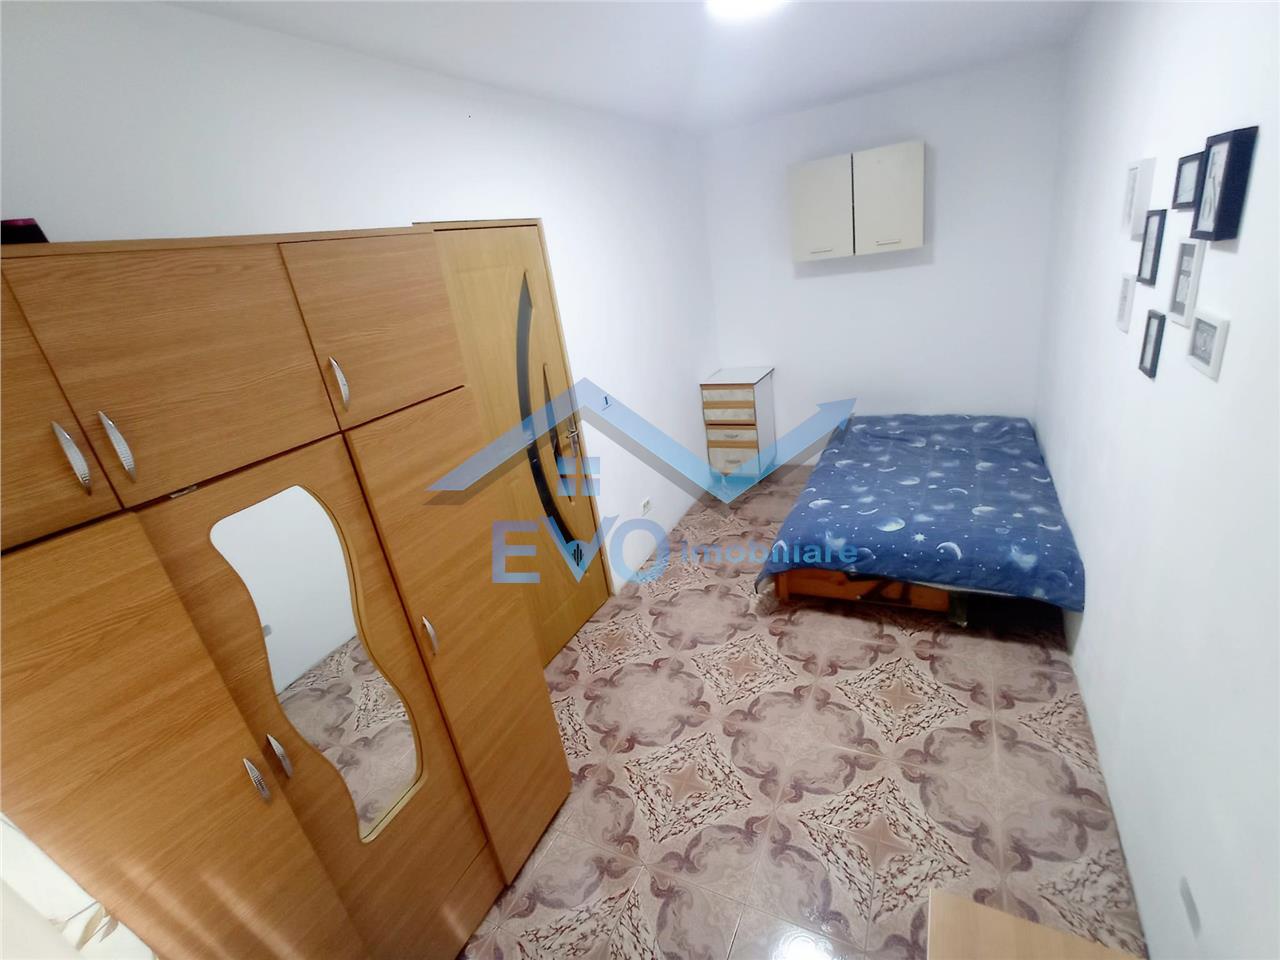 Apartament 2 camere, semidecomandat, fara risc, Tatarasi